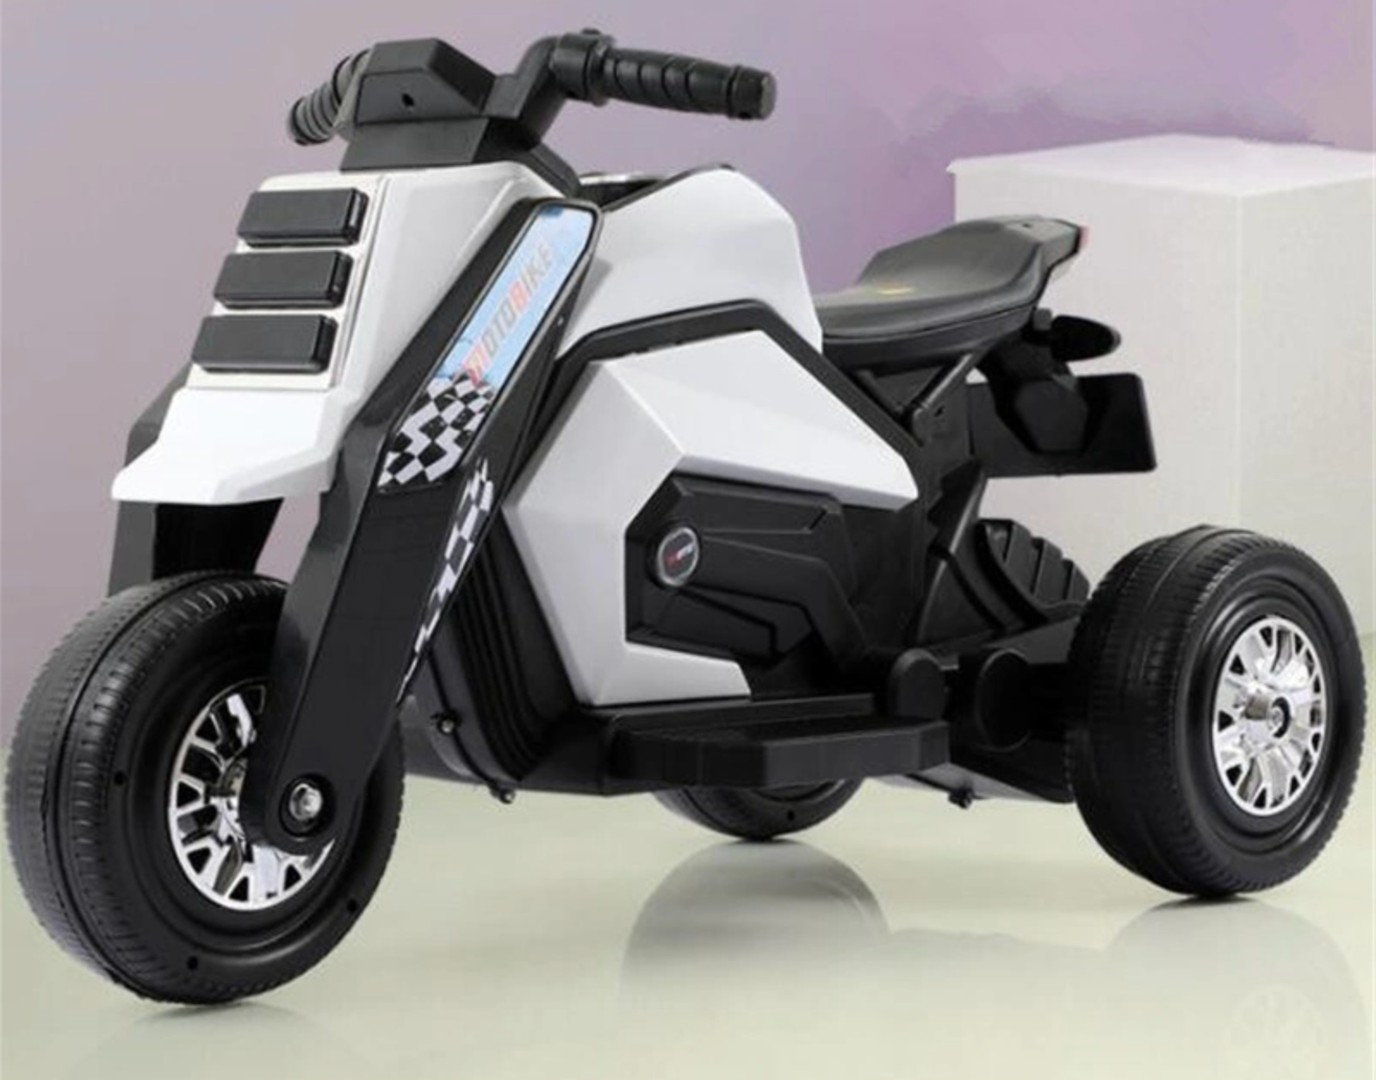 juguetes - Motorcito eléctrico para niños de tres ruedas recargable, motor moto 0